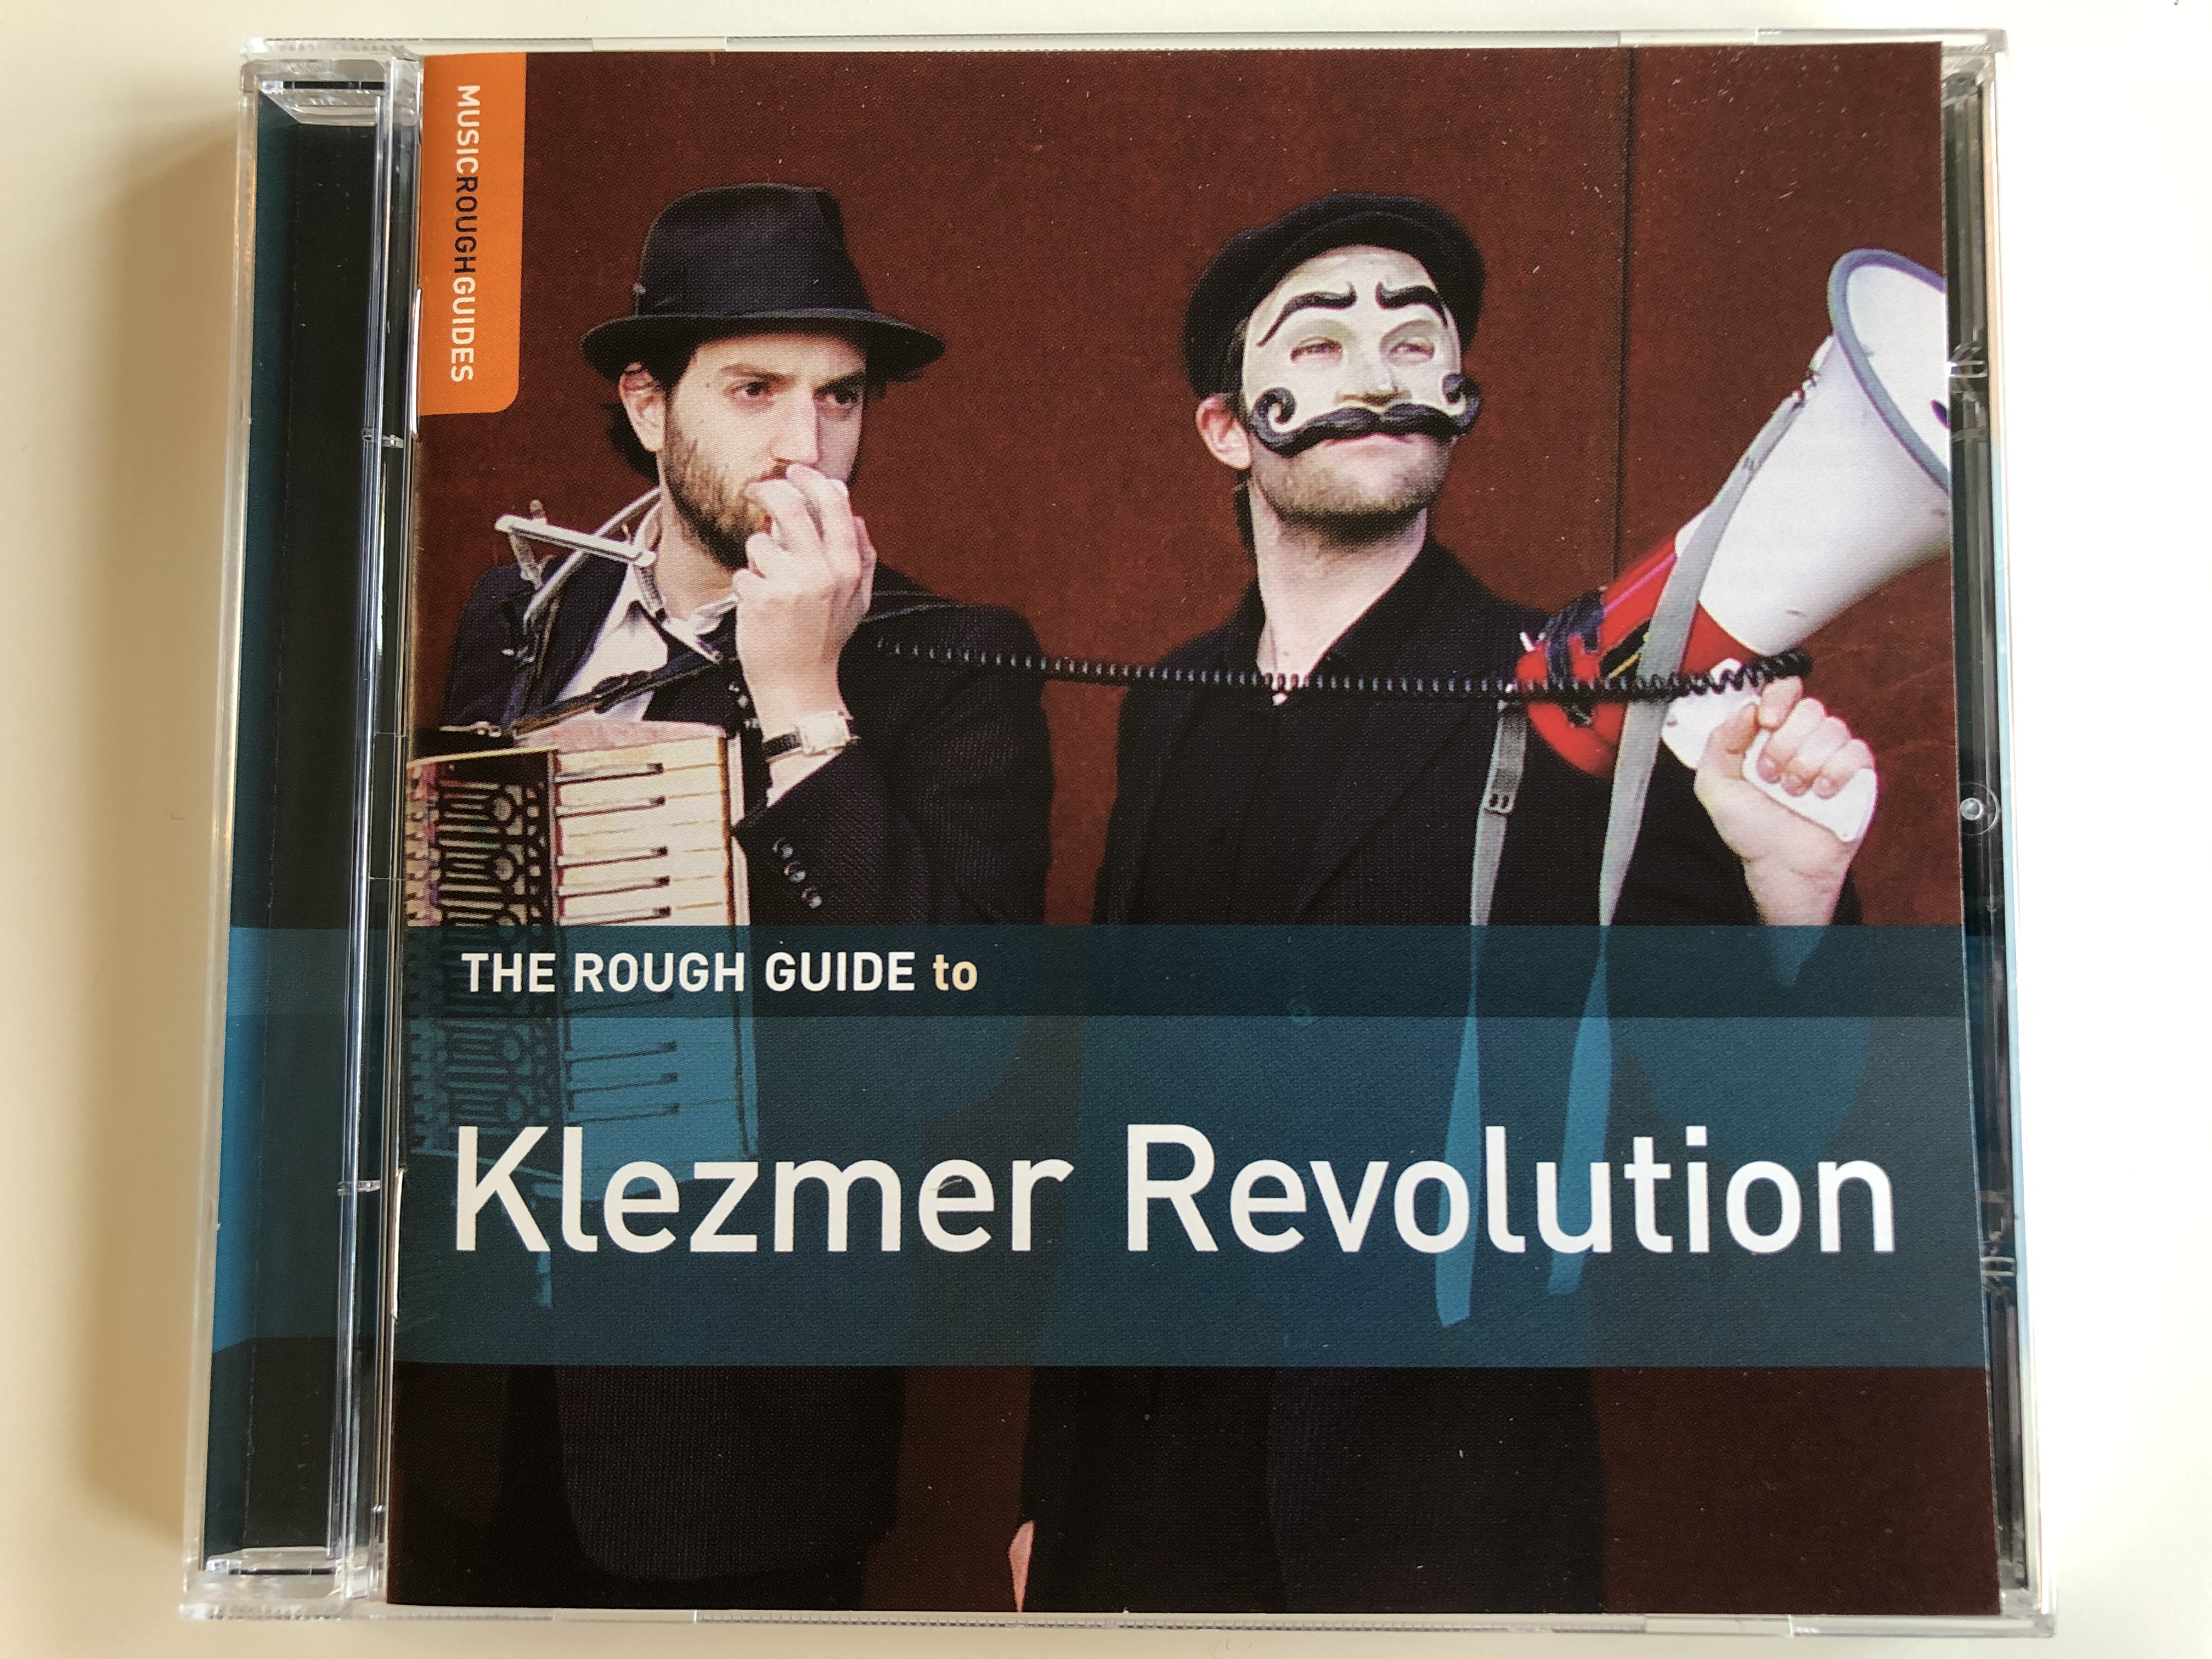 the-rough-guide-to-klezmer-revolution-world-music-network-audio-cd-2008-rgnet1205cd-1-.jpg